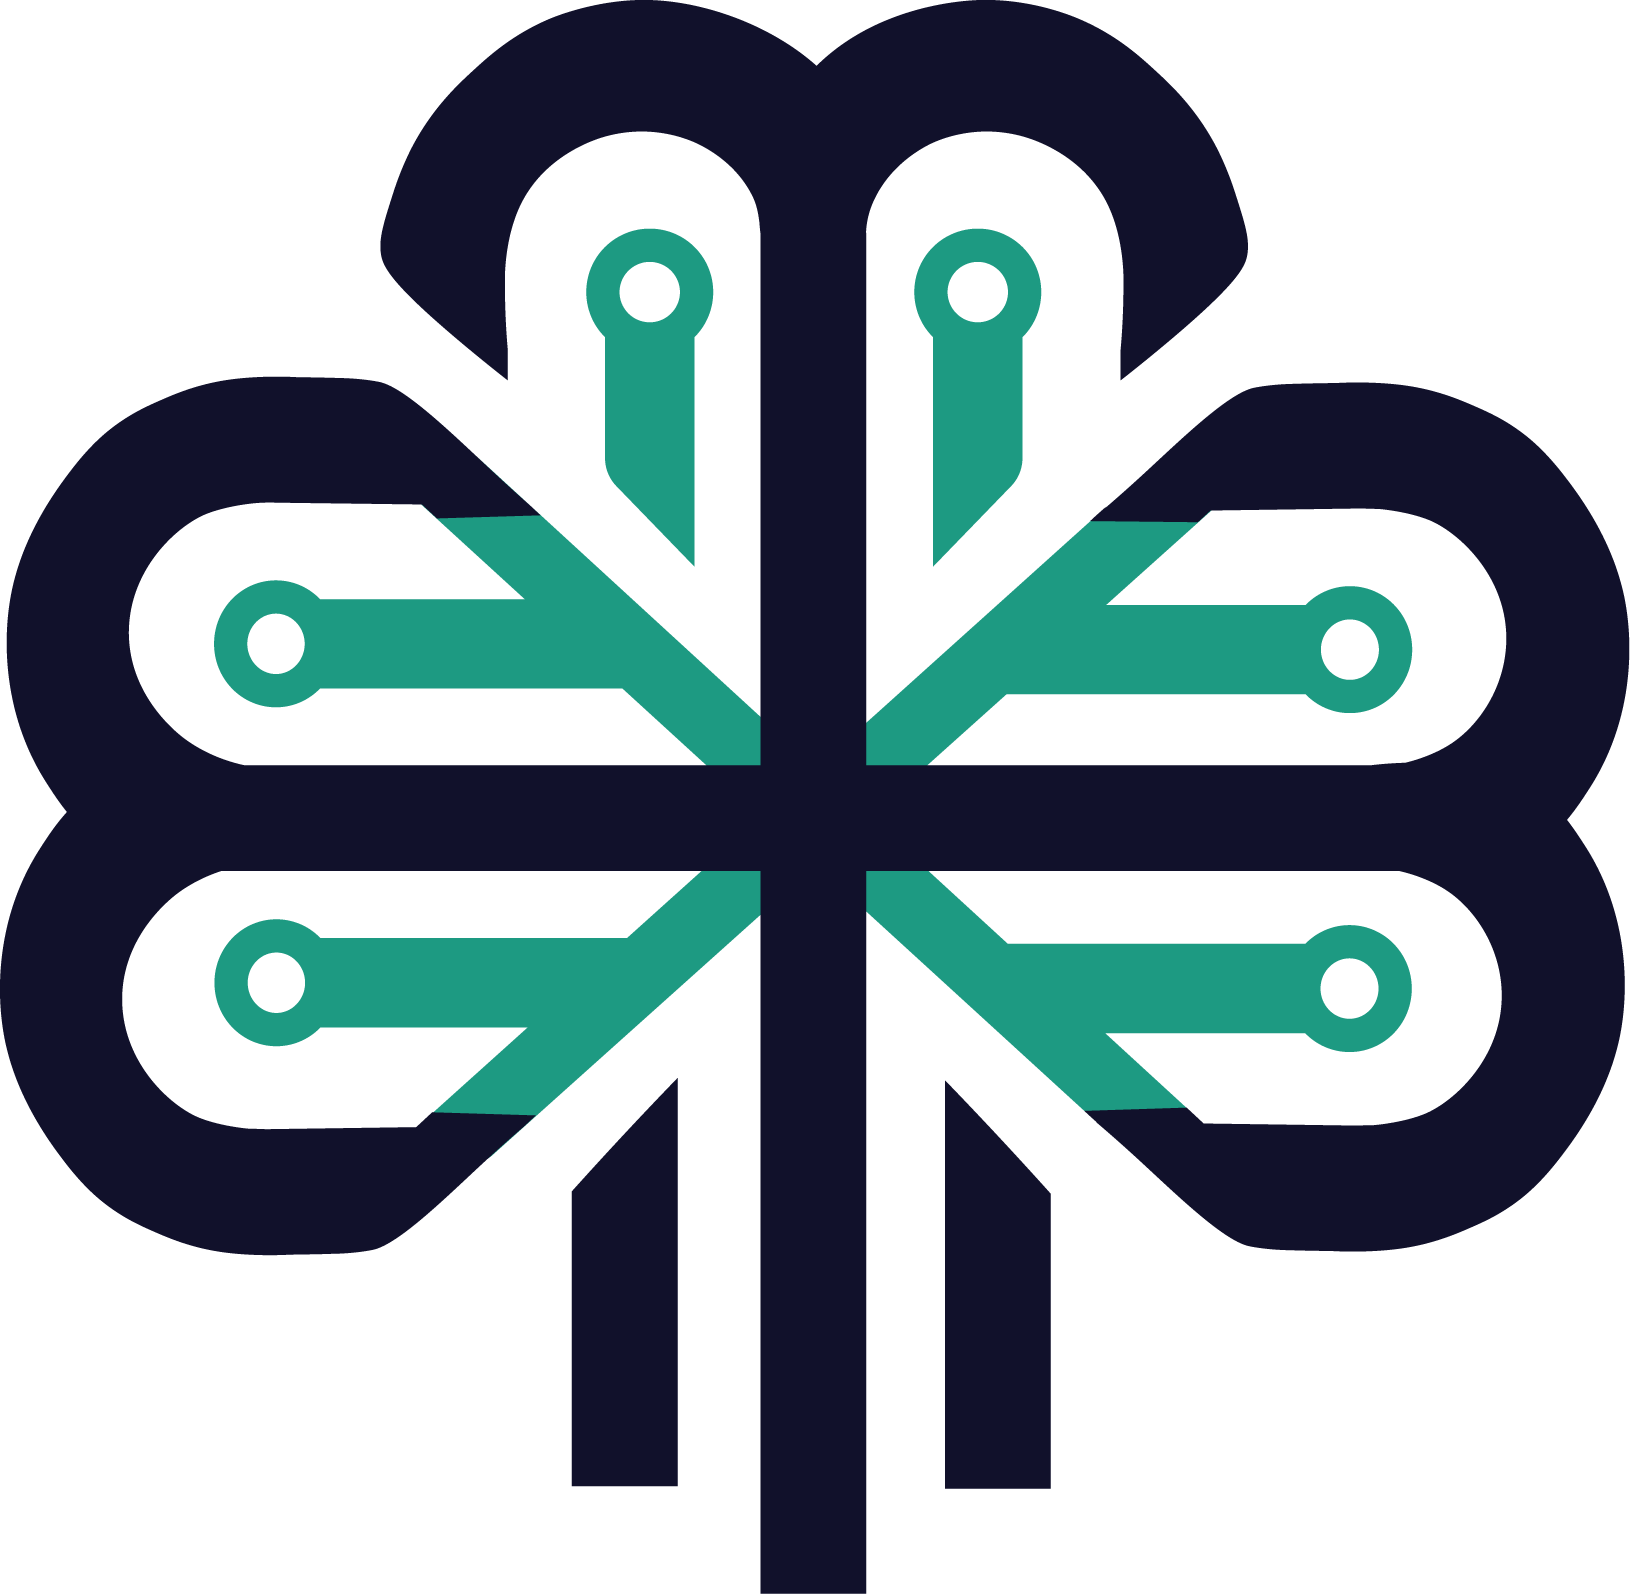 cloverleaf logo